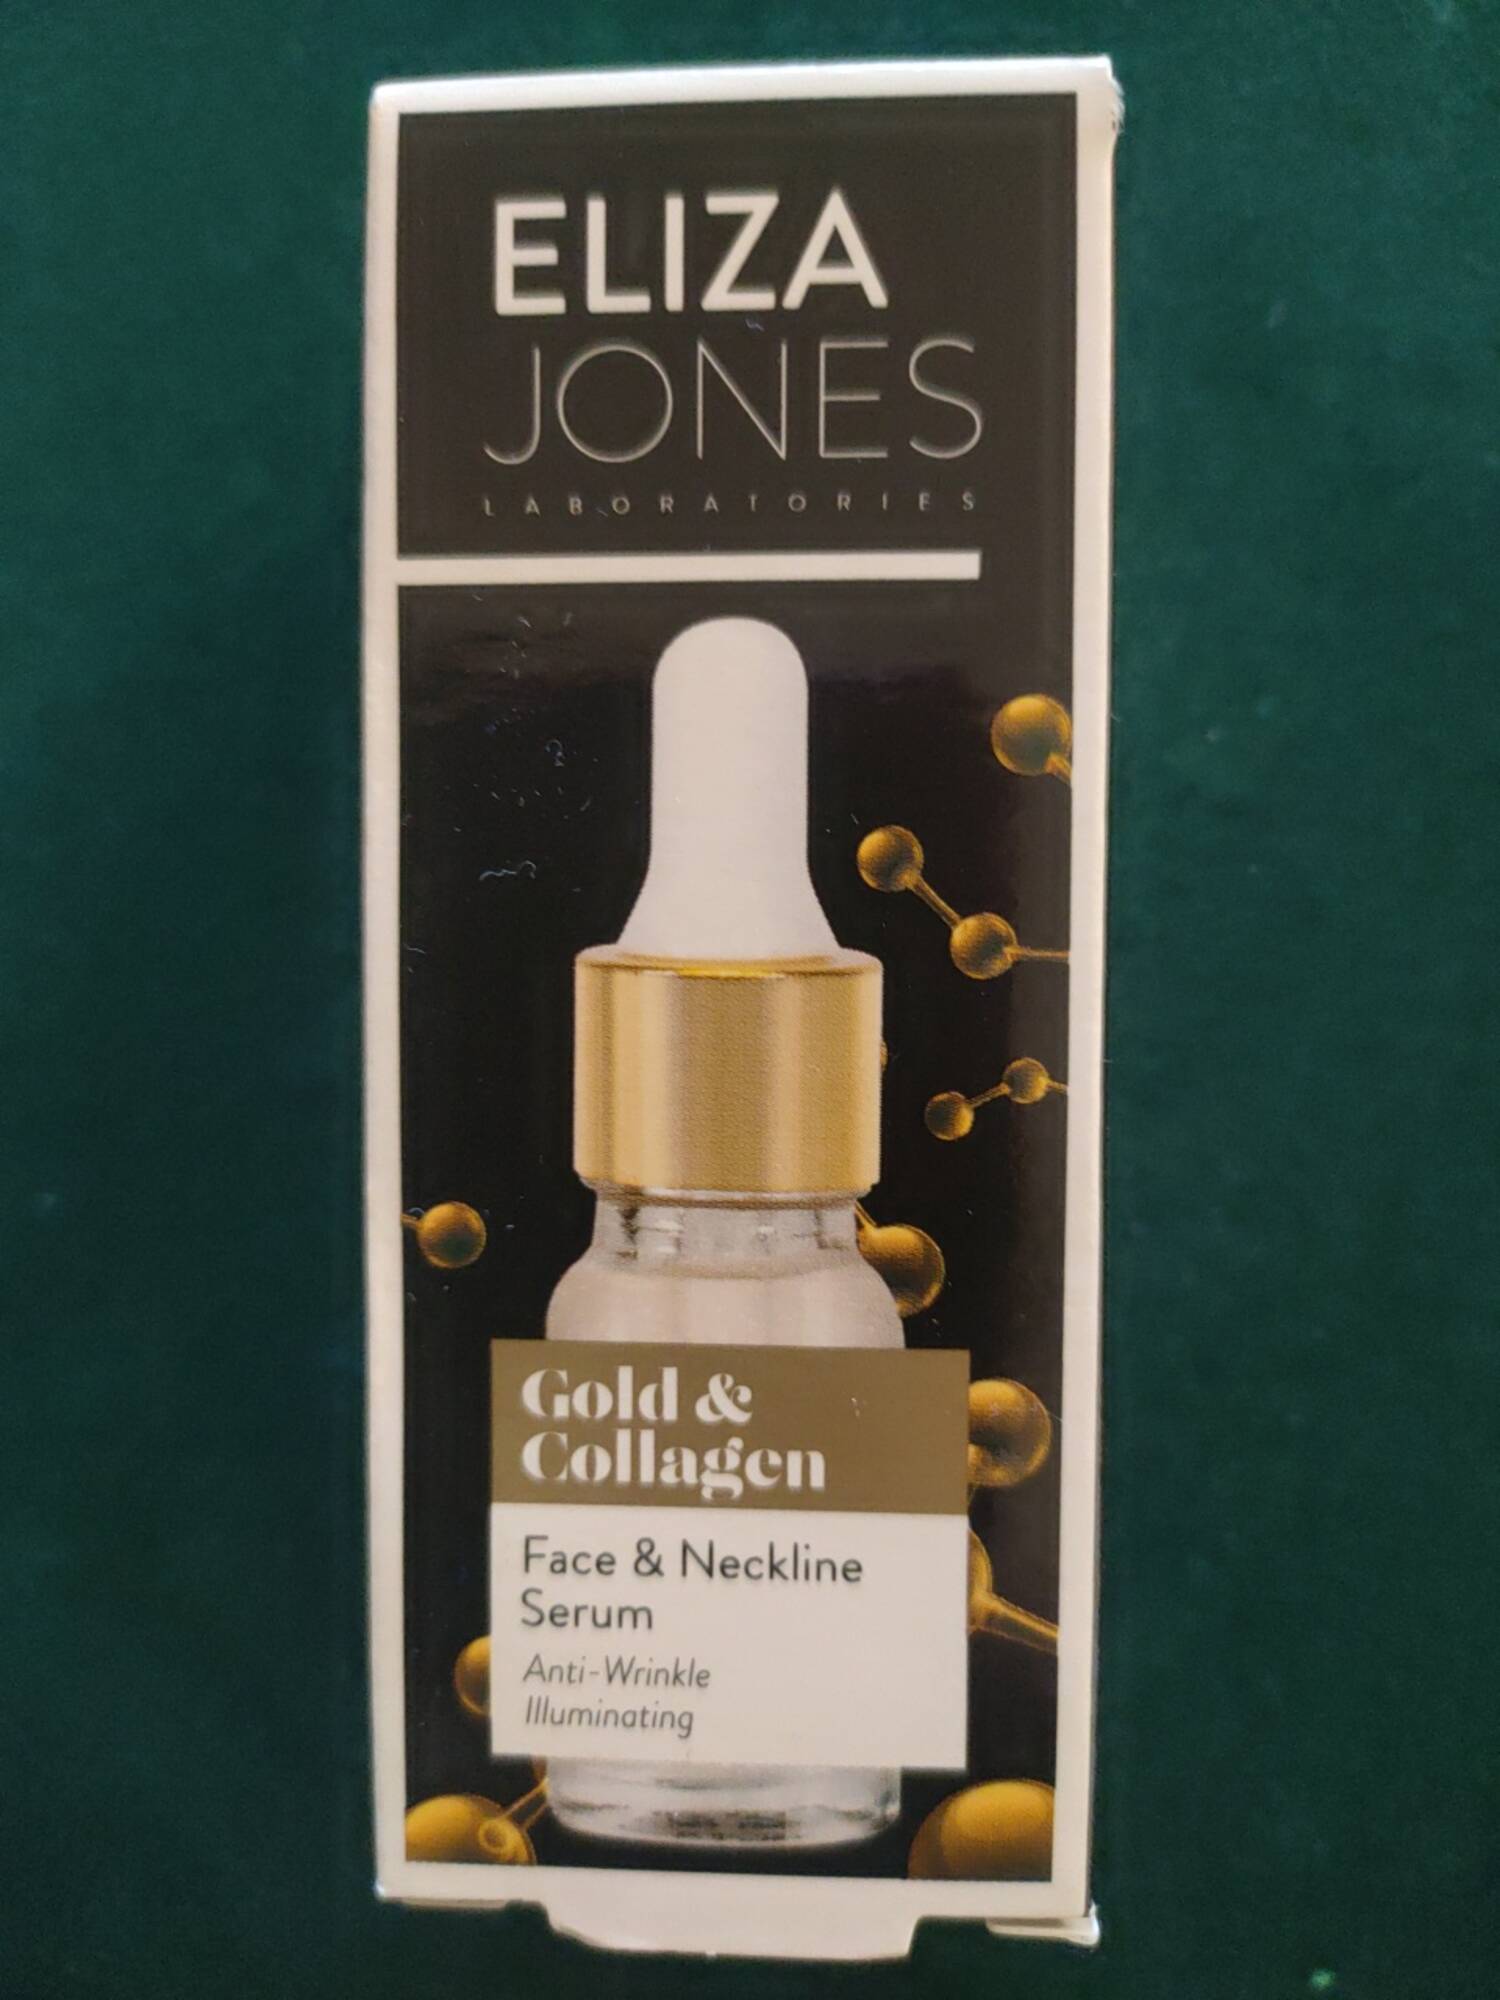 ELIZA JONES LABORATORIES - Gold & collagen - Face & neckline serum